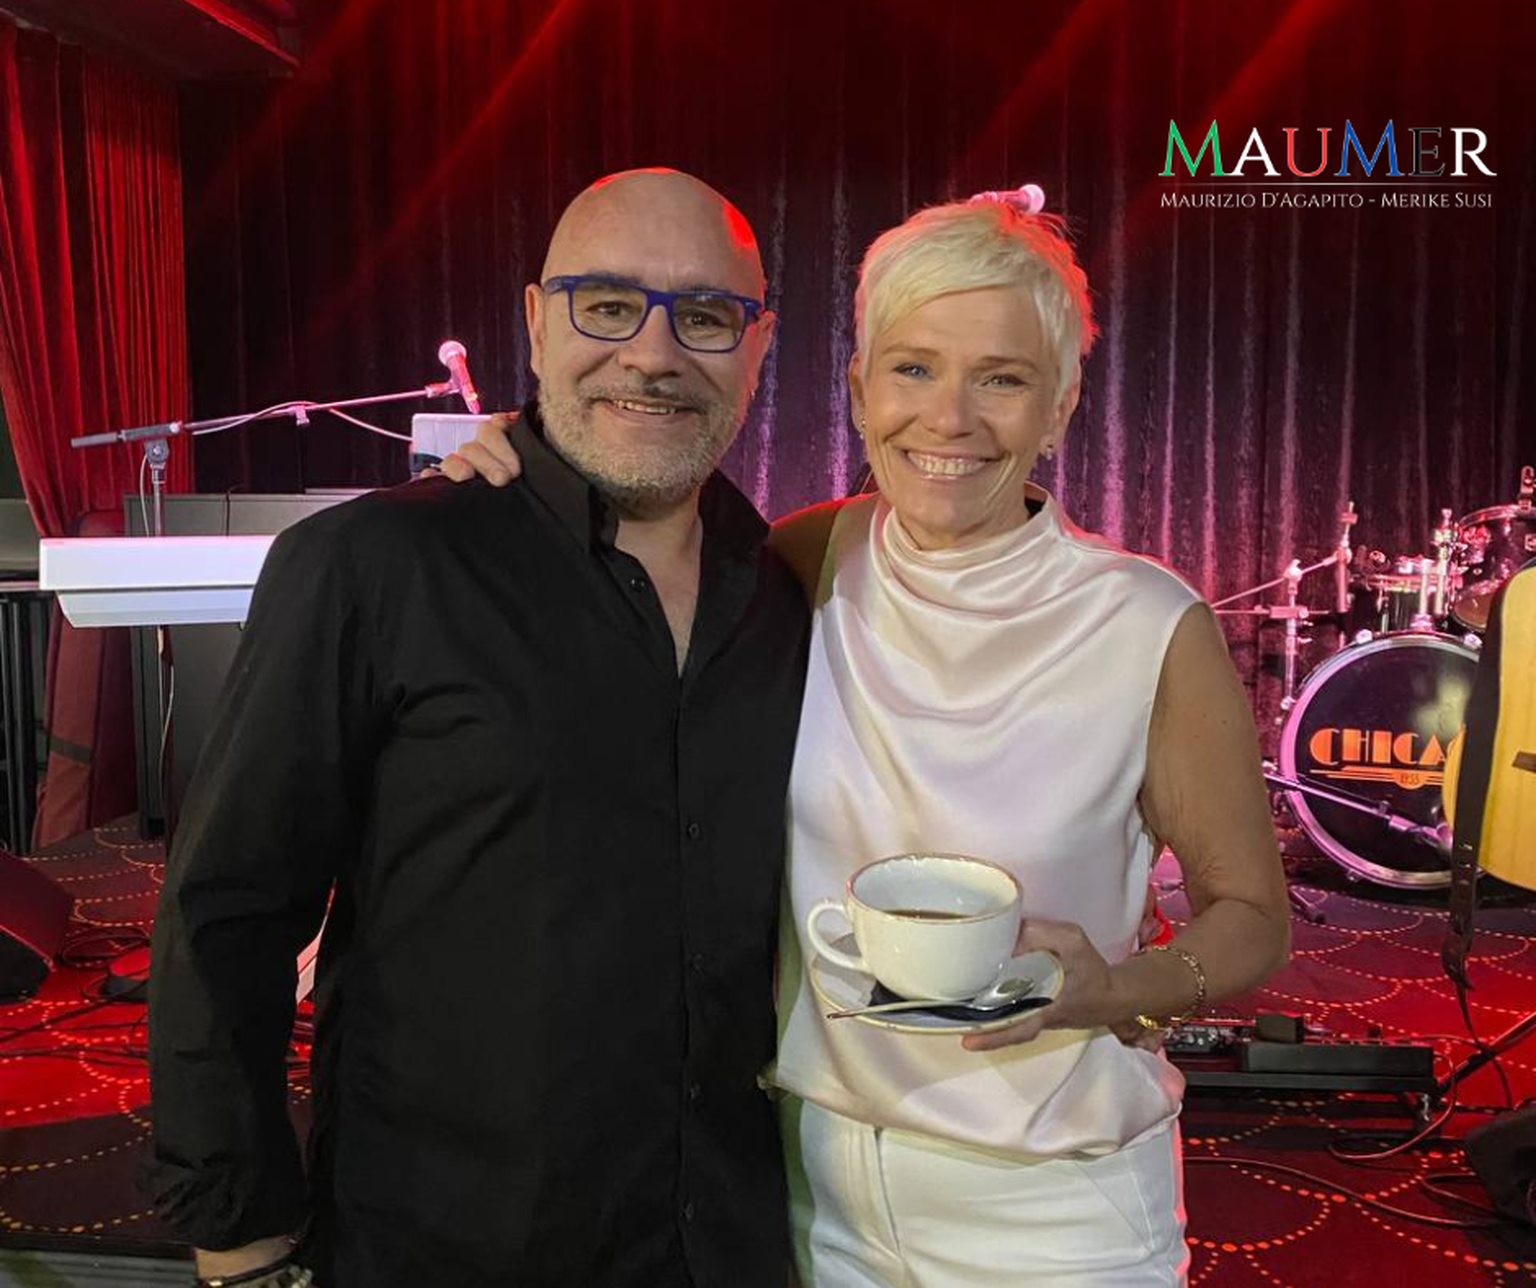 Eesti muusik Merike Susi lõi koos itaallase Maurizio D'Agapitoga omapärase muusikalise duo